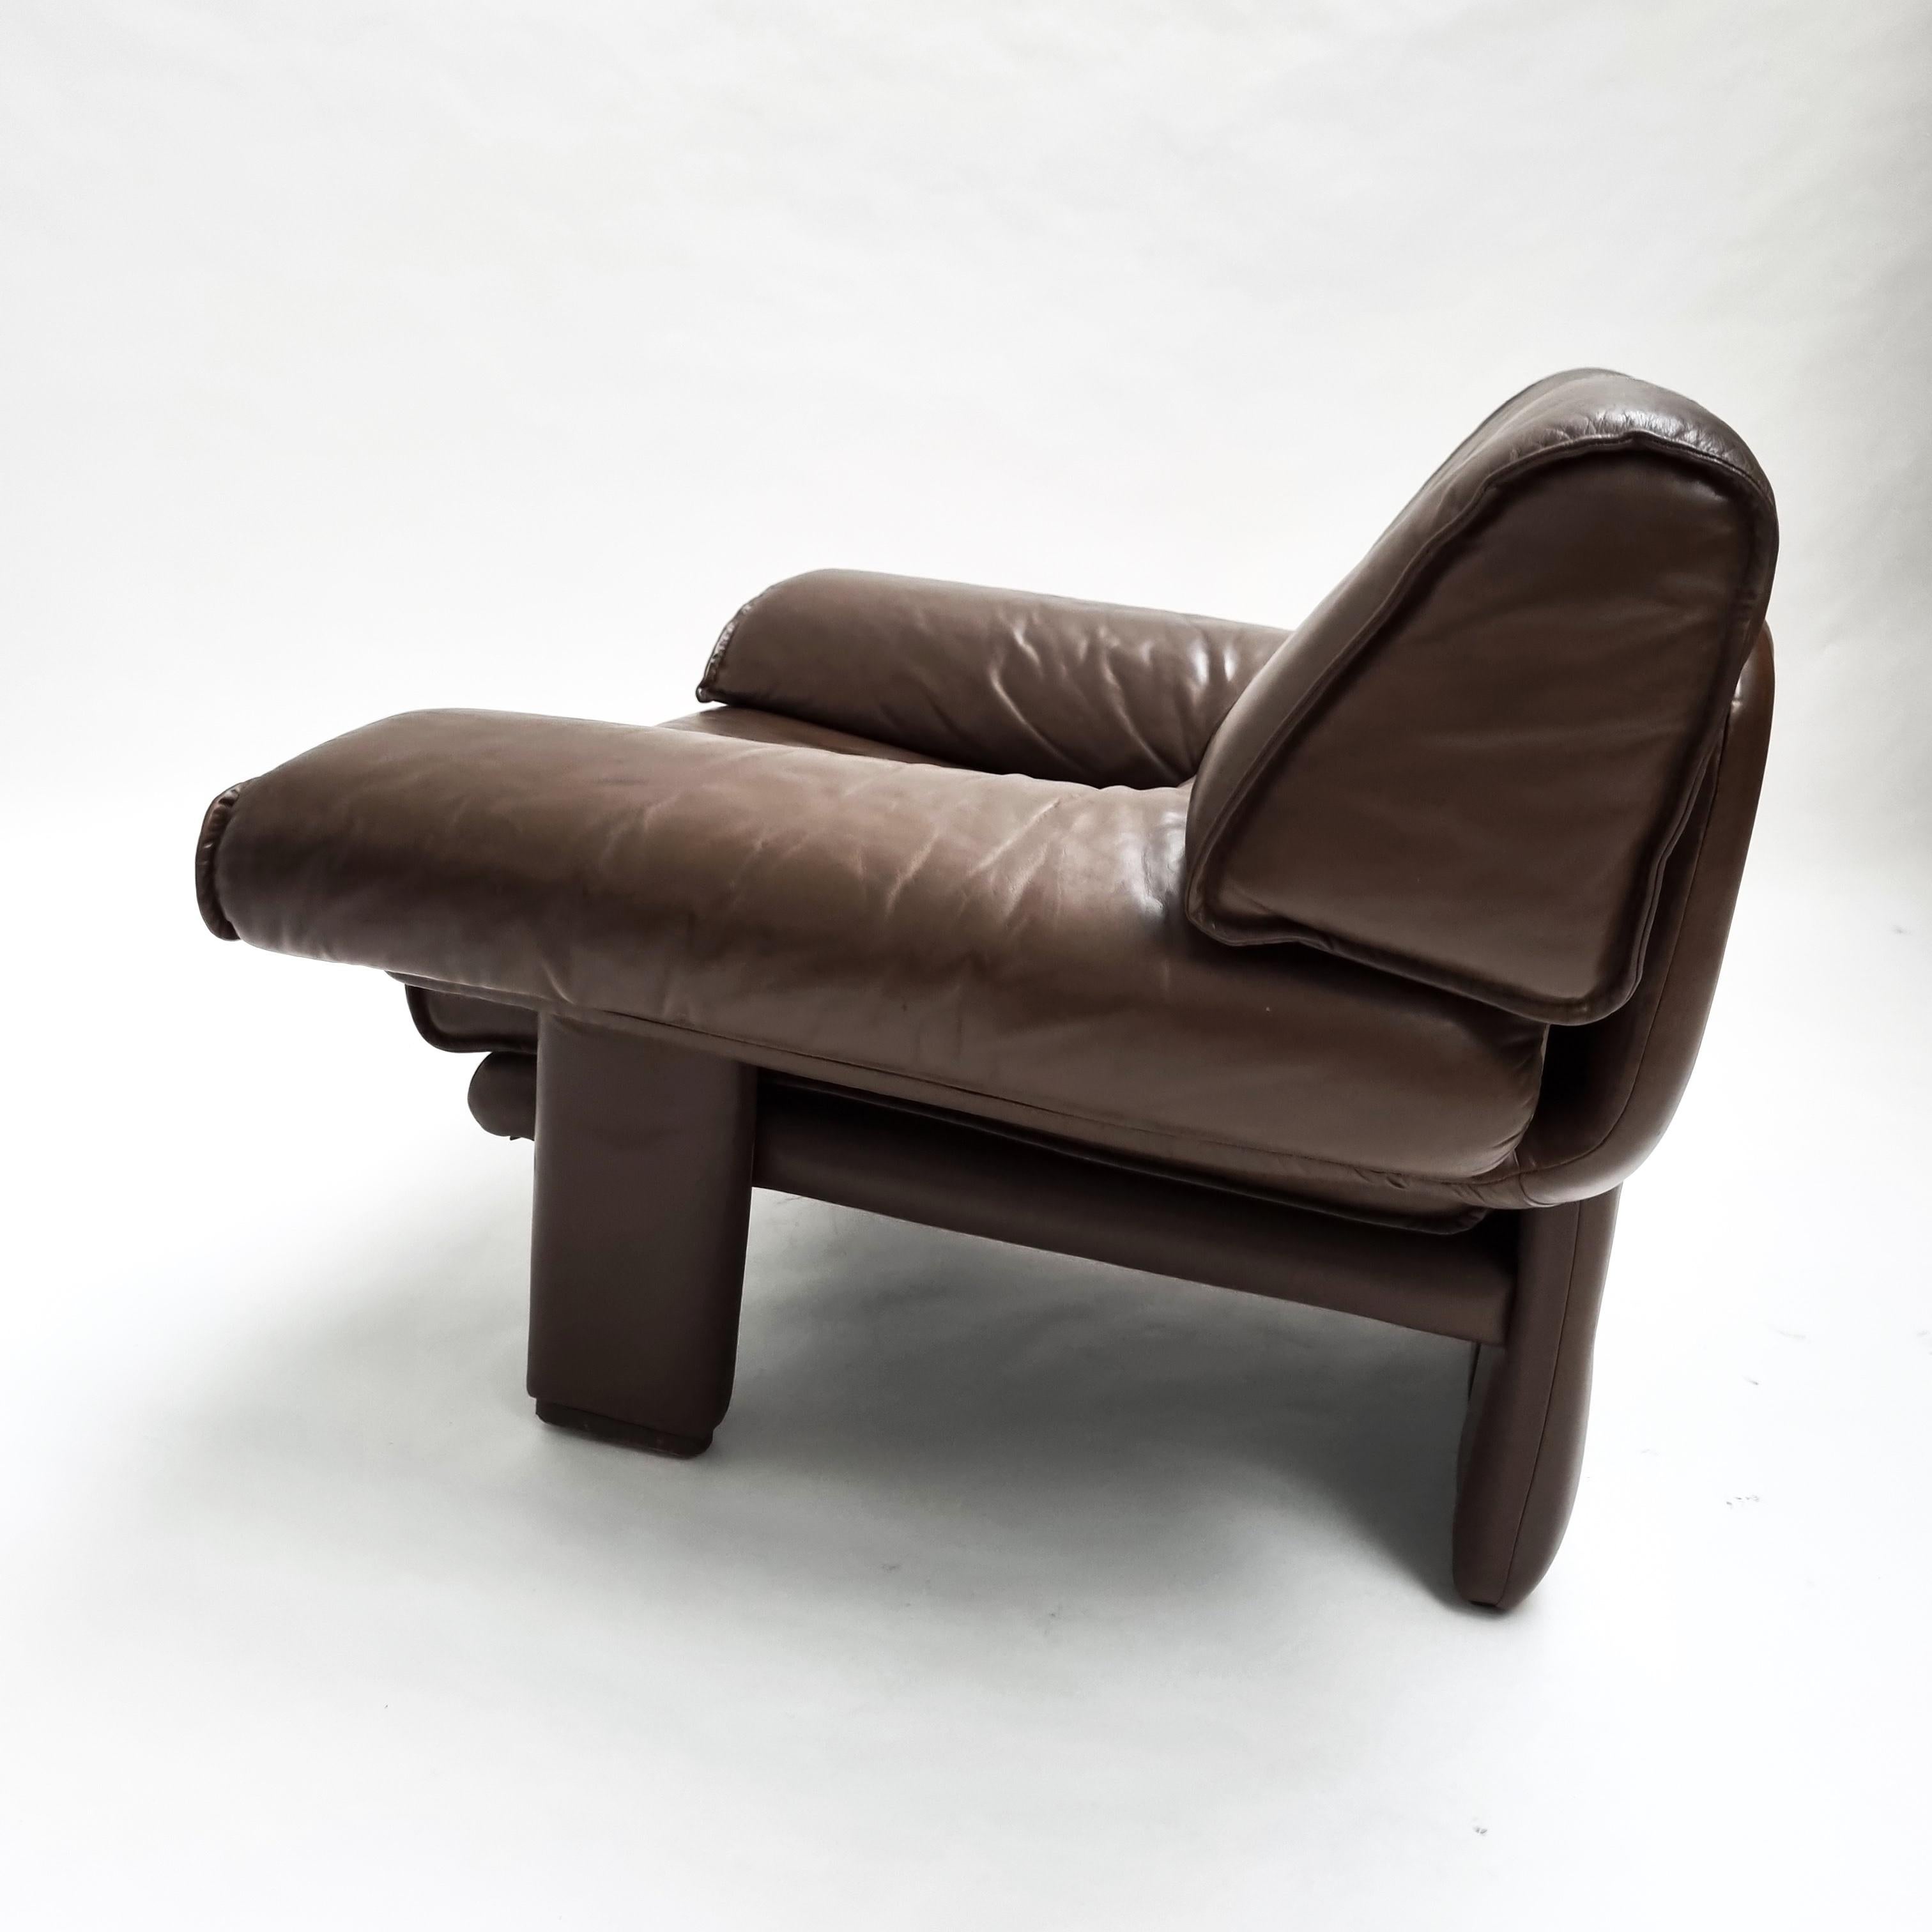 Chaise longue des années 1970. Une forme superbe, une position assise confortable, une pièce de choix pour n'importe quelle pièce. La forme est belle, les accoudoirs larges, le pad de siège amovible. Enfin, la chaise est recouverte d'un cuir brun